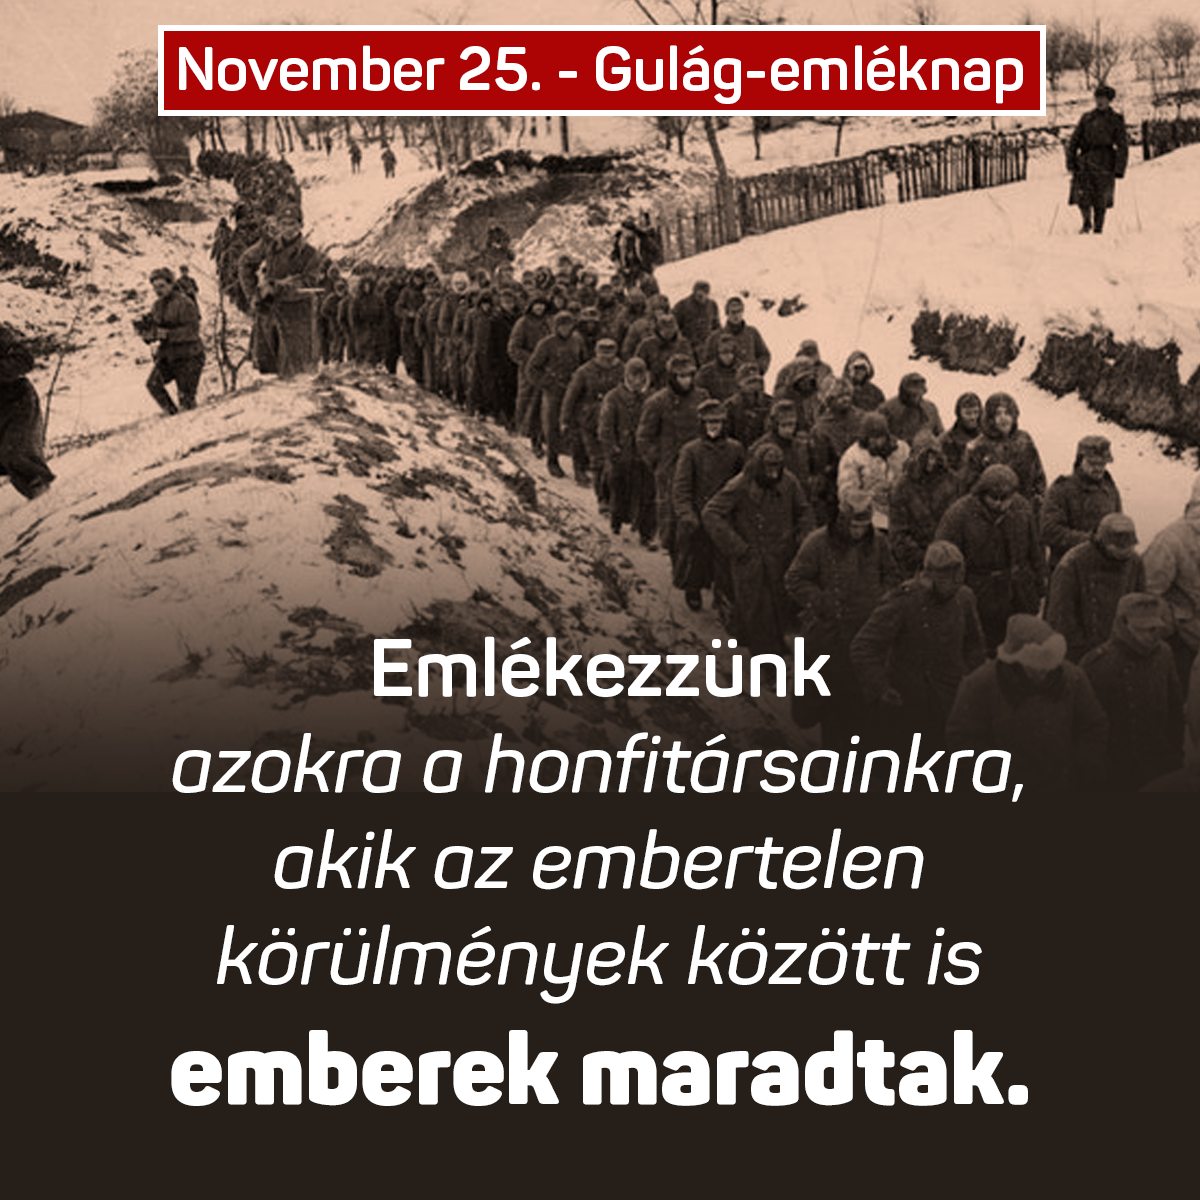 Ma van a Szovjetunióba hurcolt magyar politikai rabok és kényszermunkások emléknapja. Emlékezzünk arra a közel 800 ezer honfitársunkra, akik az embertelen körülmények között is emberek maradtak.